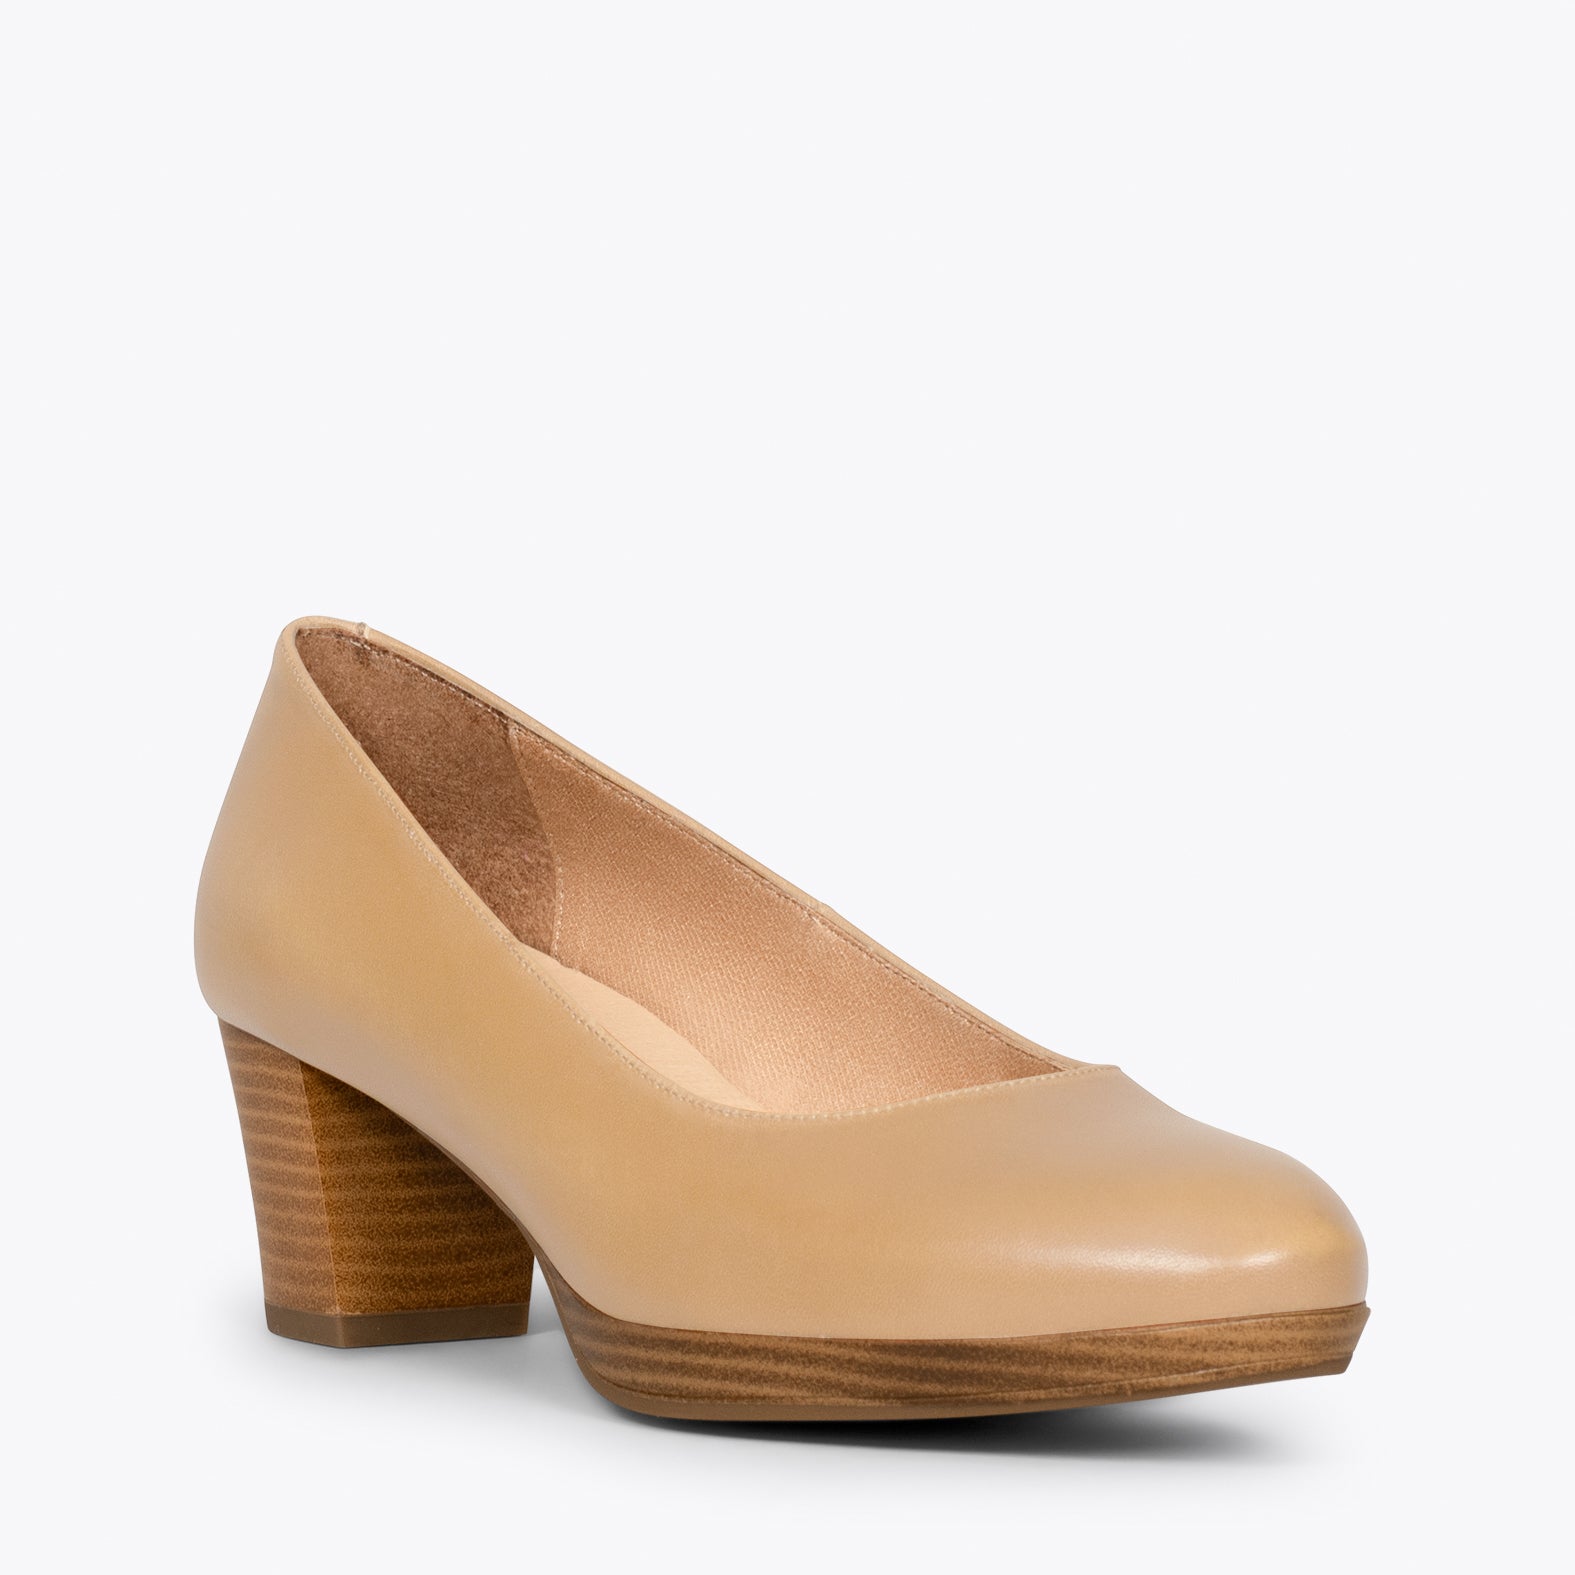 FLIGHT S – BEIGE women's shoes with low heel and platform